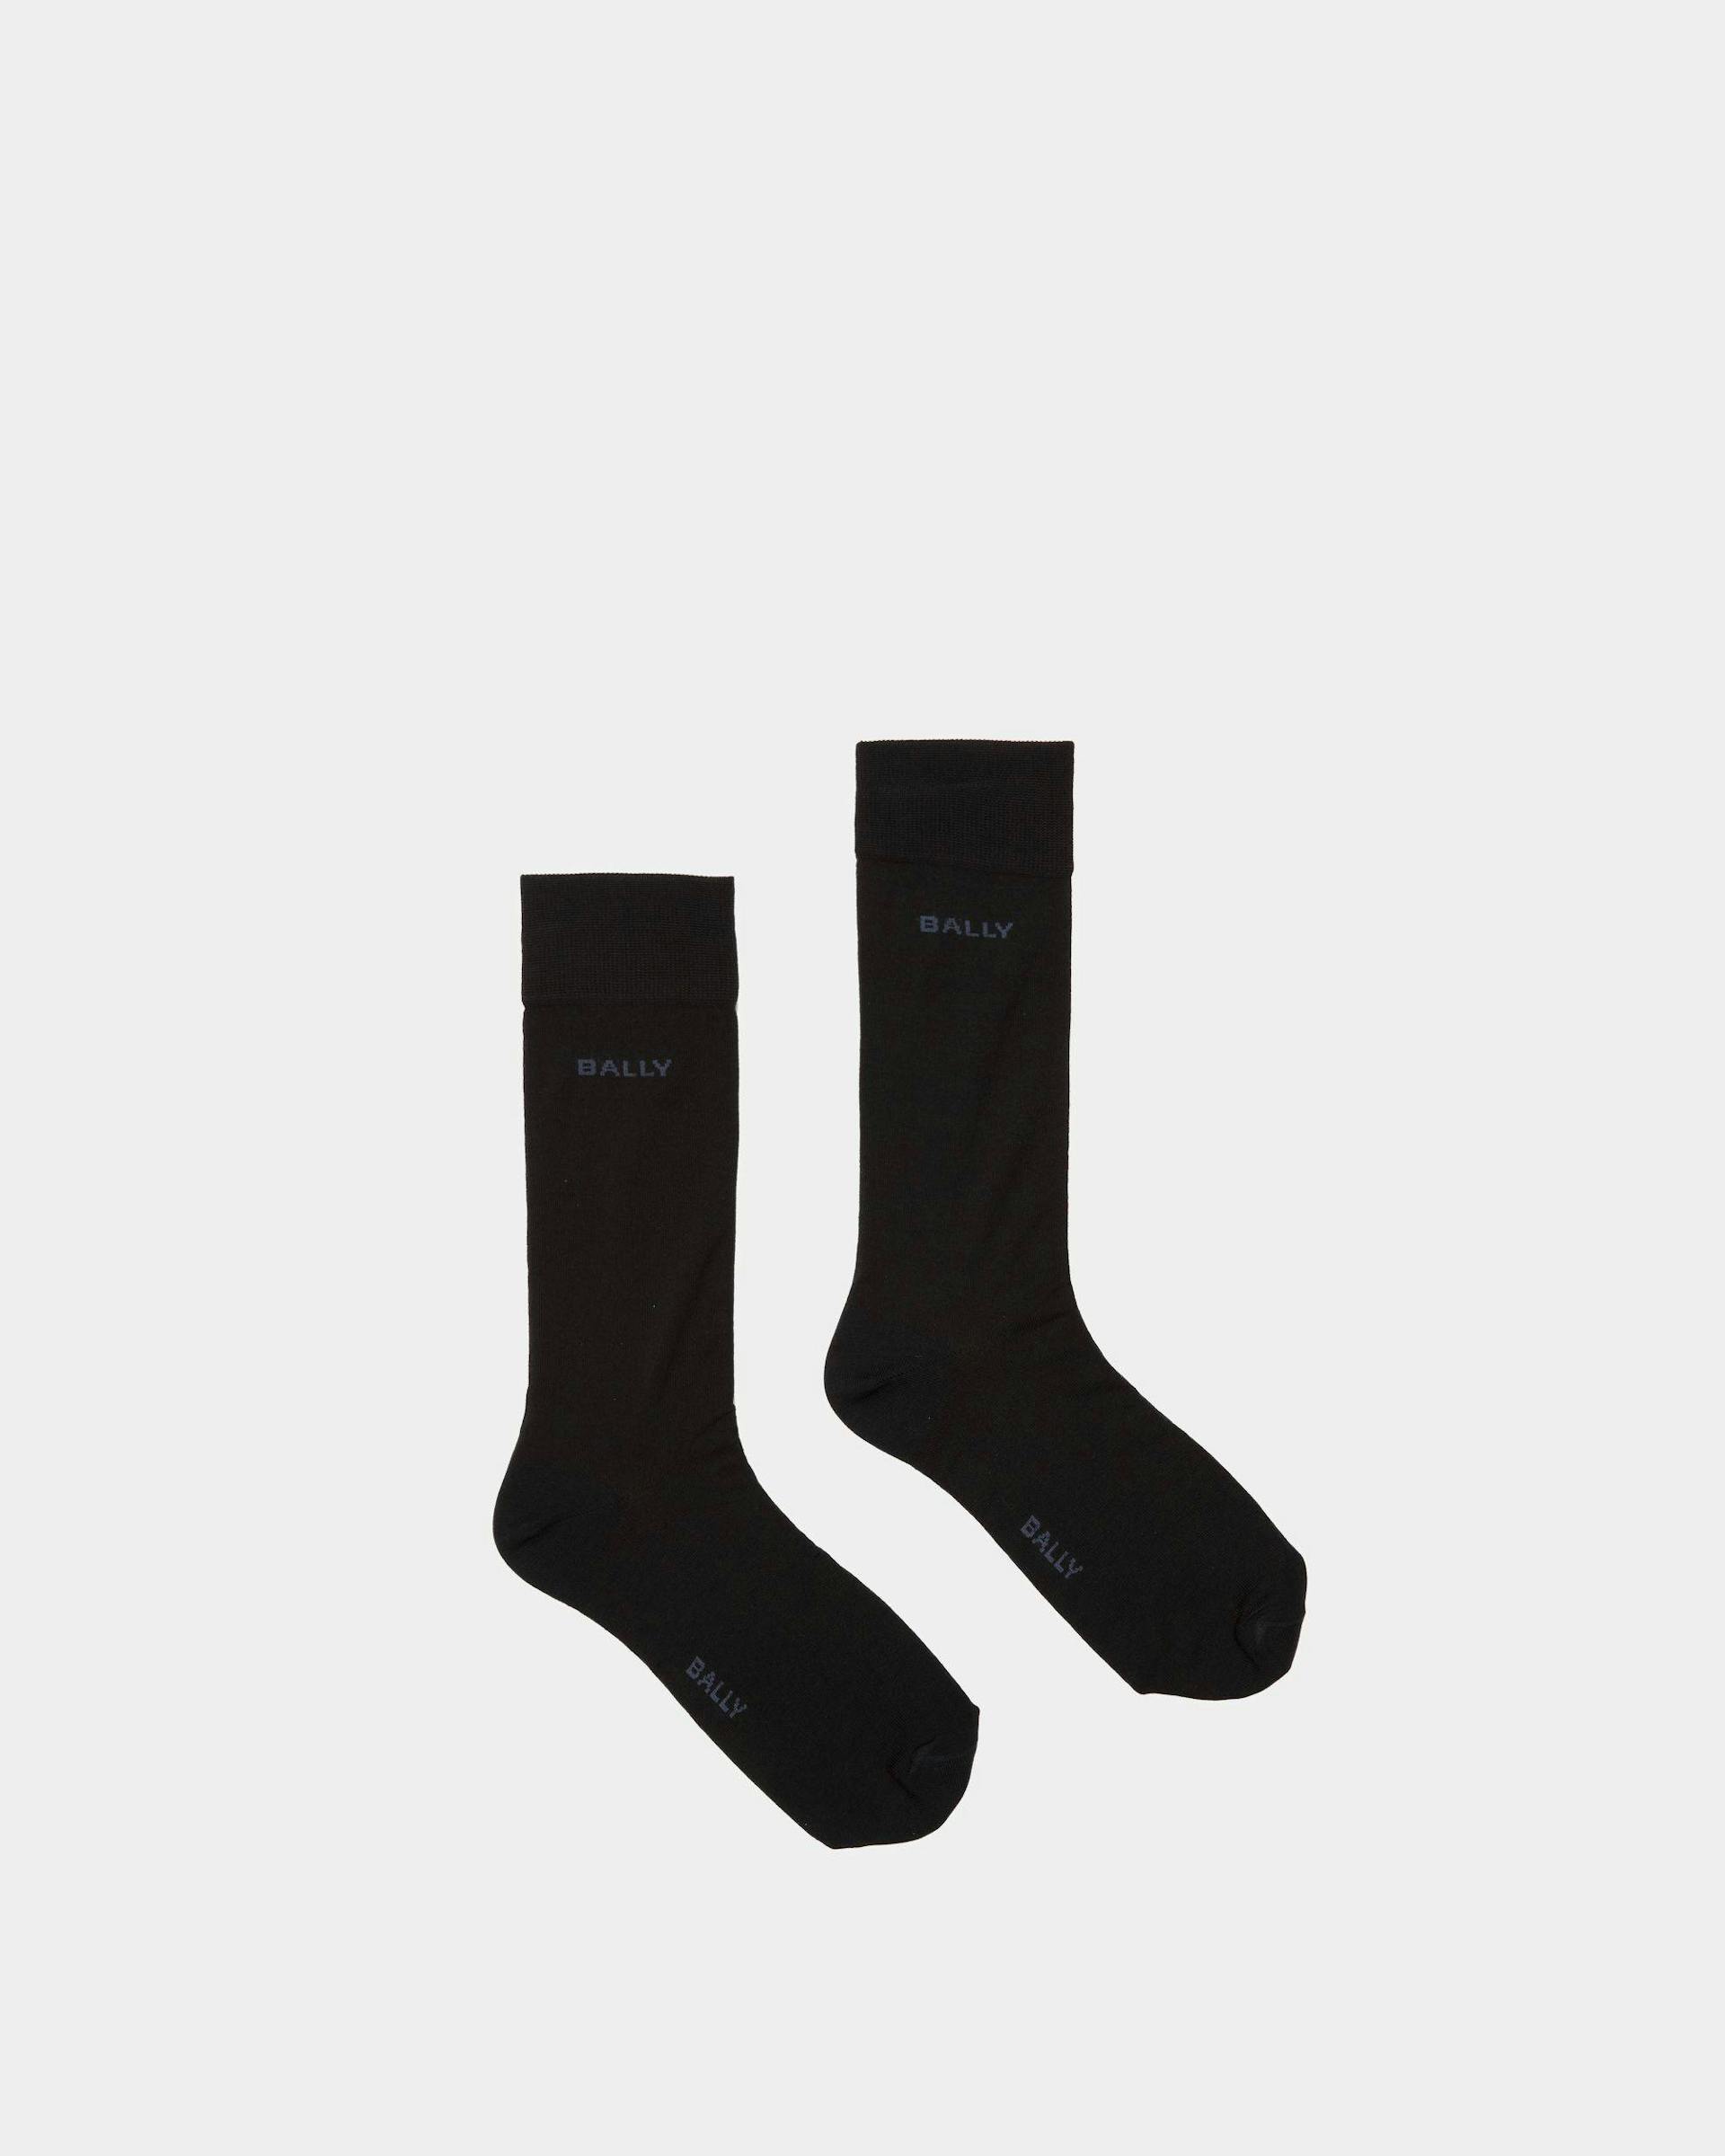 Logo-Socken Aus Baumwollgemisch in Tintenblau und Indigoblau - Herren - Bally - 01